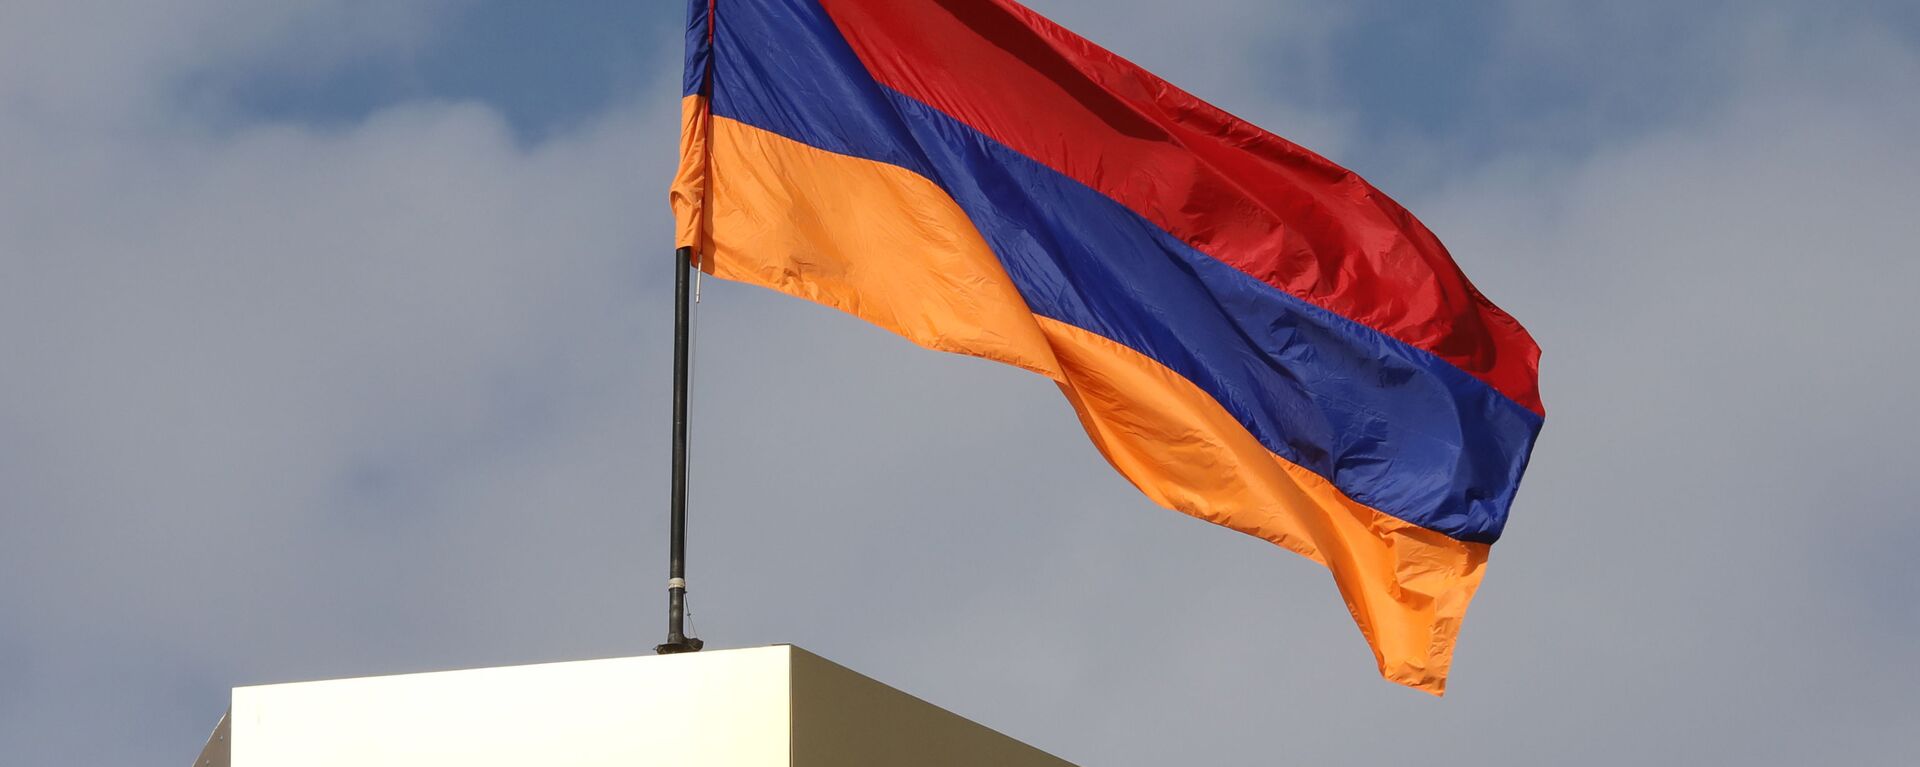 Ermenistan bayrak - Ermenistan bayrağı - Sputnik Türkiye, 1920, 15.05.2021